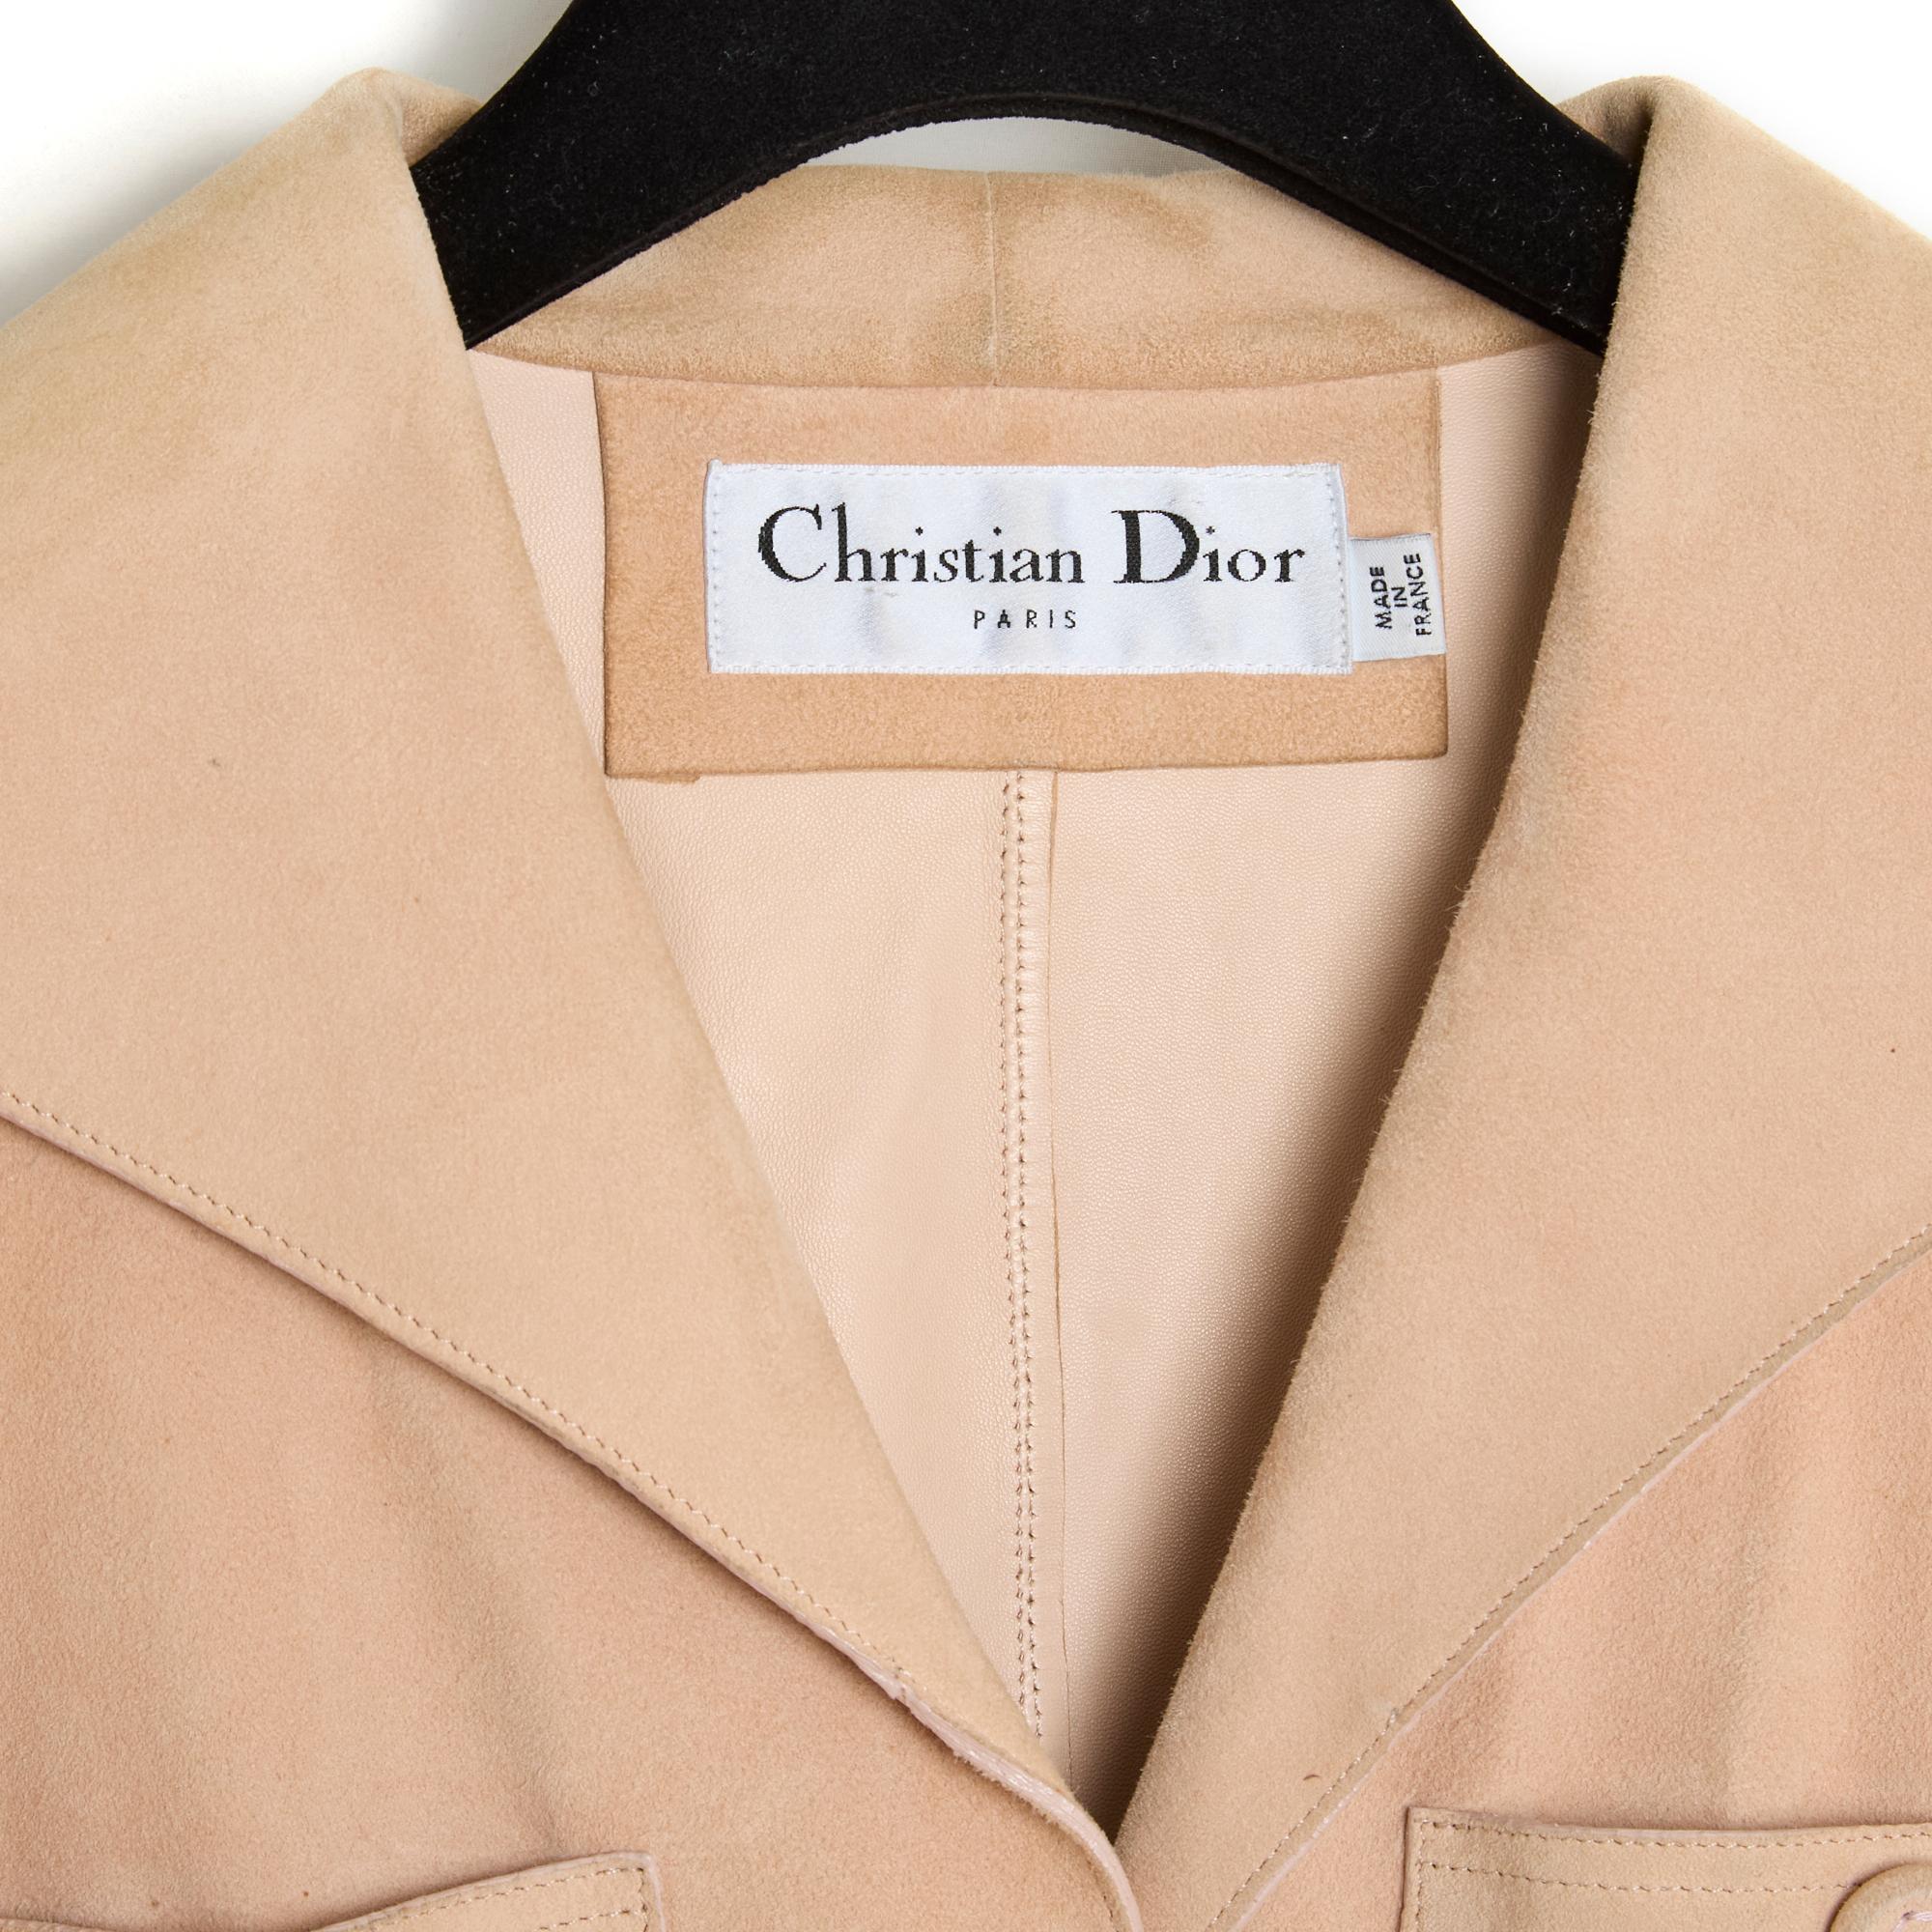 Veste Christian Dior de la collection Cruise 2000 de John Galliano en daim souple beige légèrement rosé, col évasé fermé par 3 boutons recouverts de daim coordonné, 4 poches plaquées ornées d'un gros bouton, manches longues également fermées par un